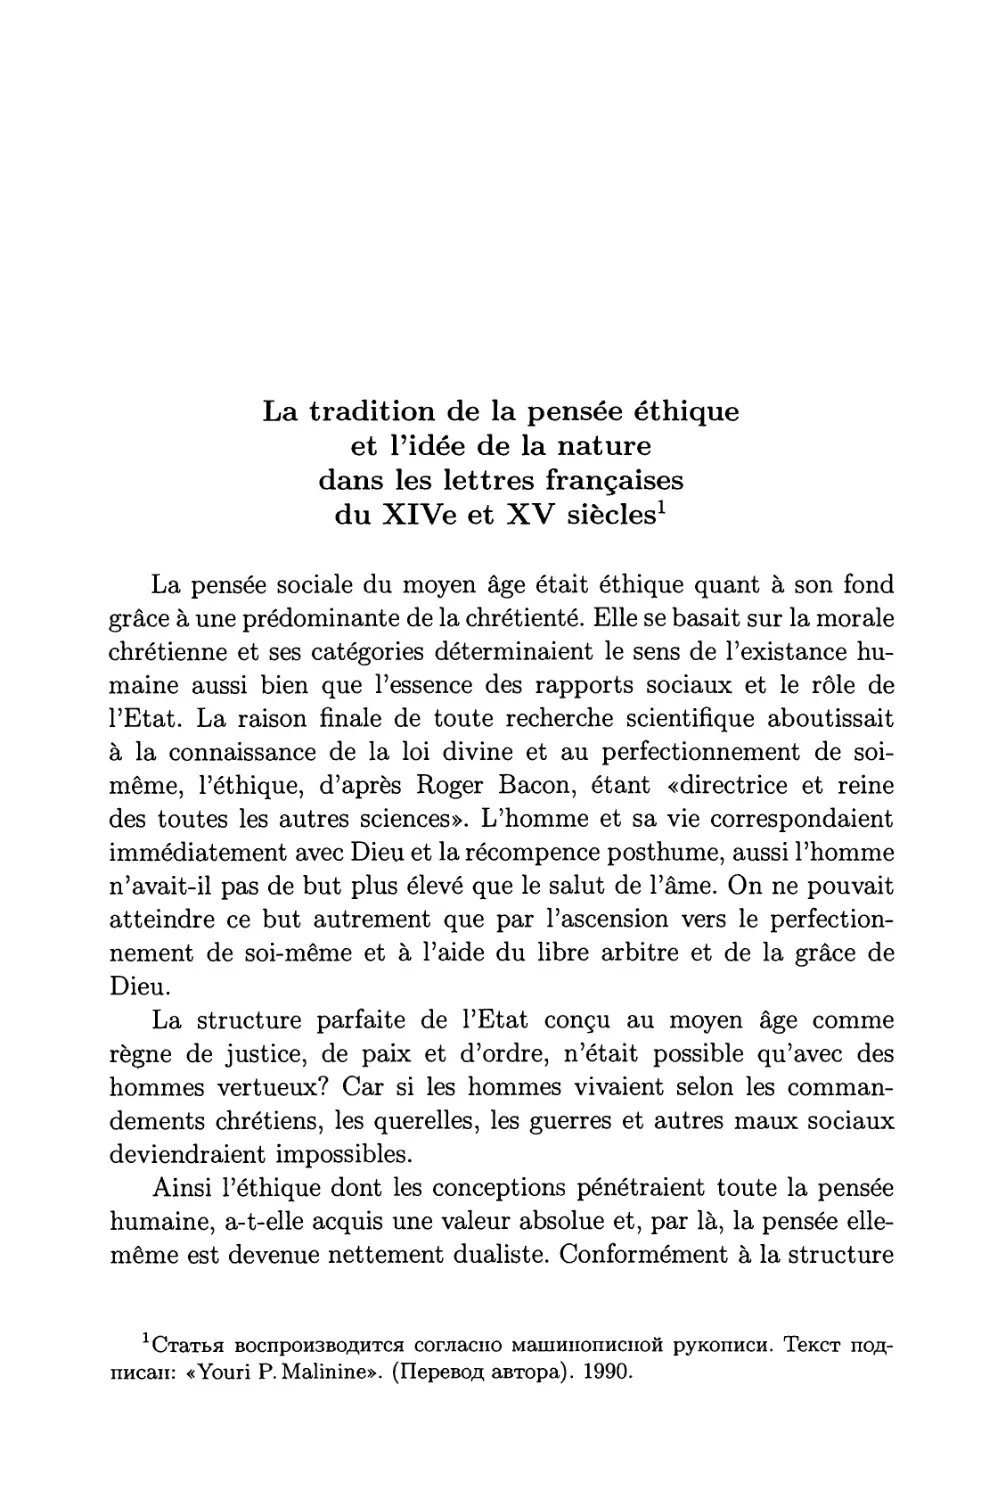 La tradition de la pensée éthique et l’idée de la nature dans les lettres françaises du XIV et XV siècles